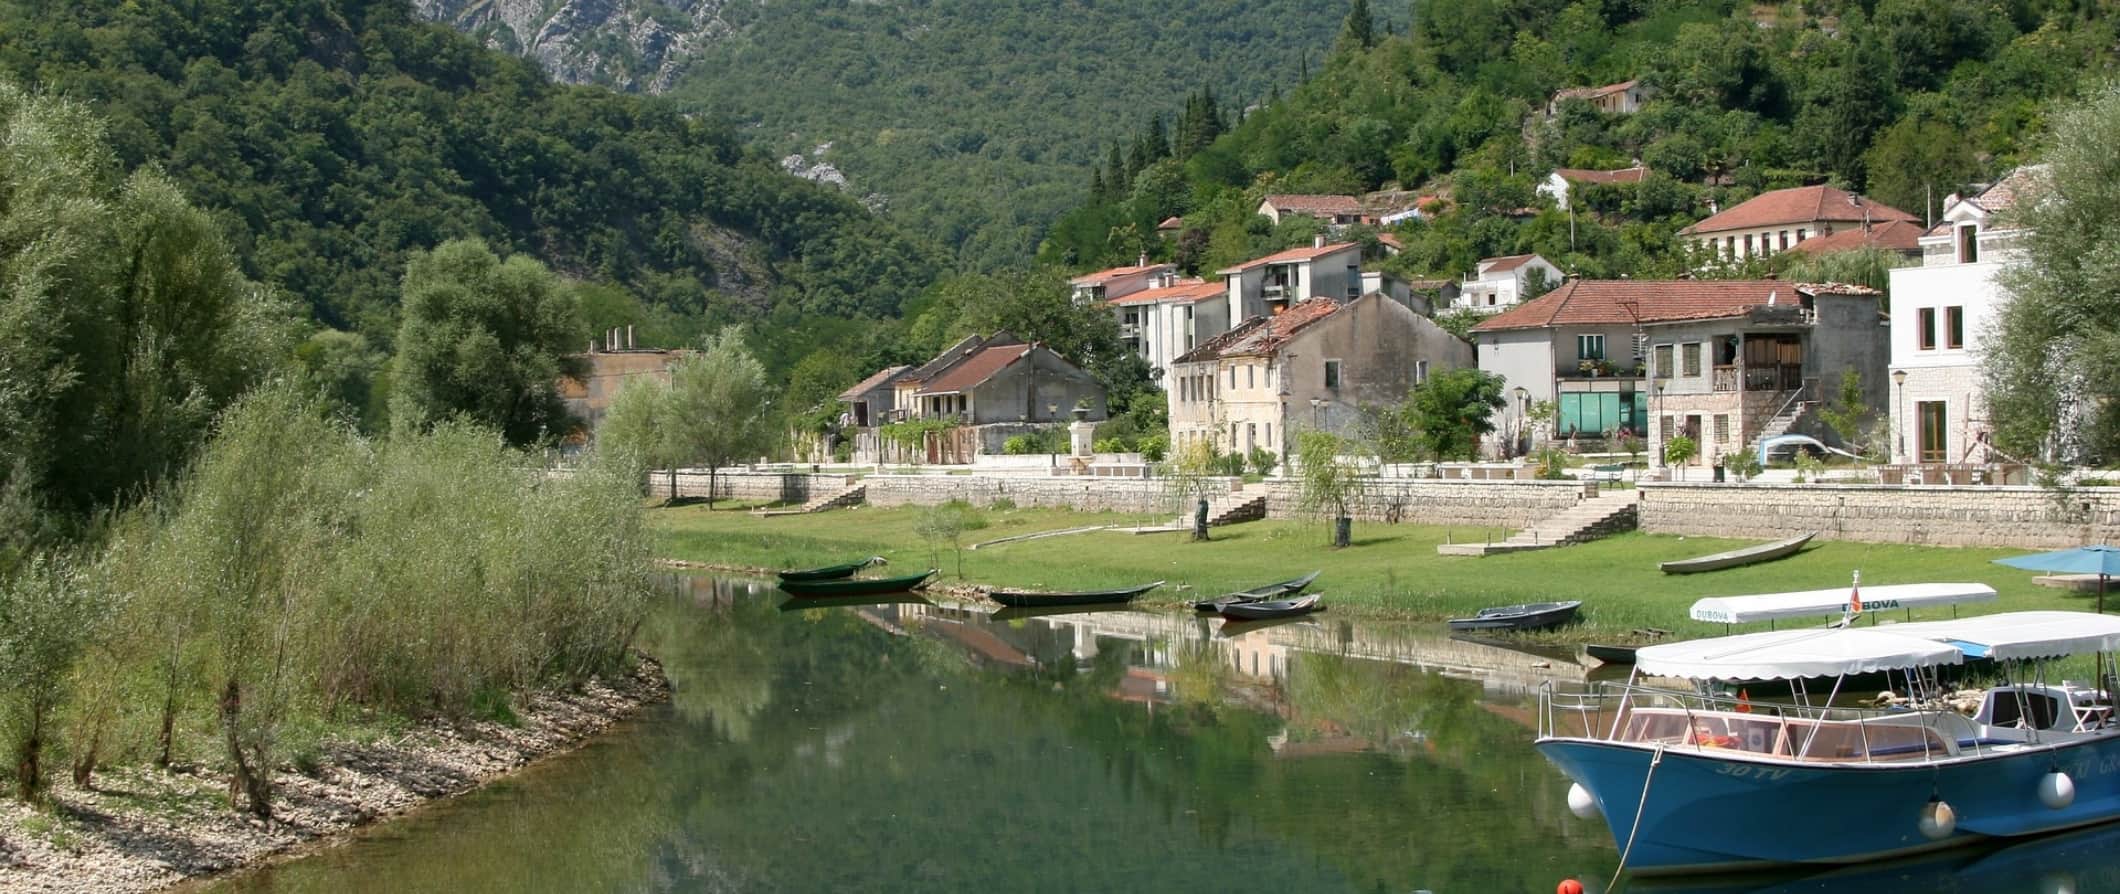 Uma pequena vila cercada por árvores nas margens do rio em Montenegro